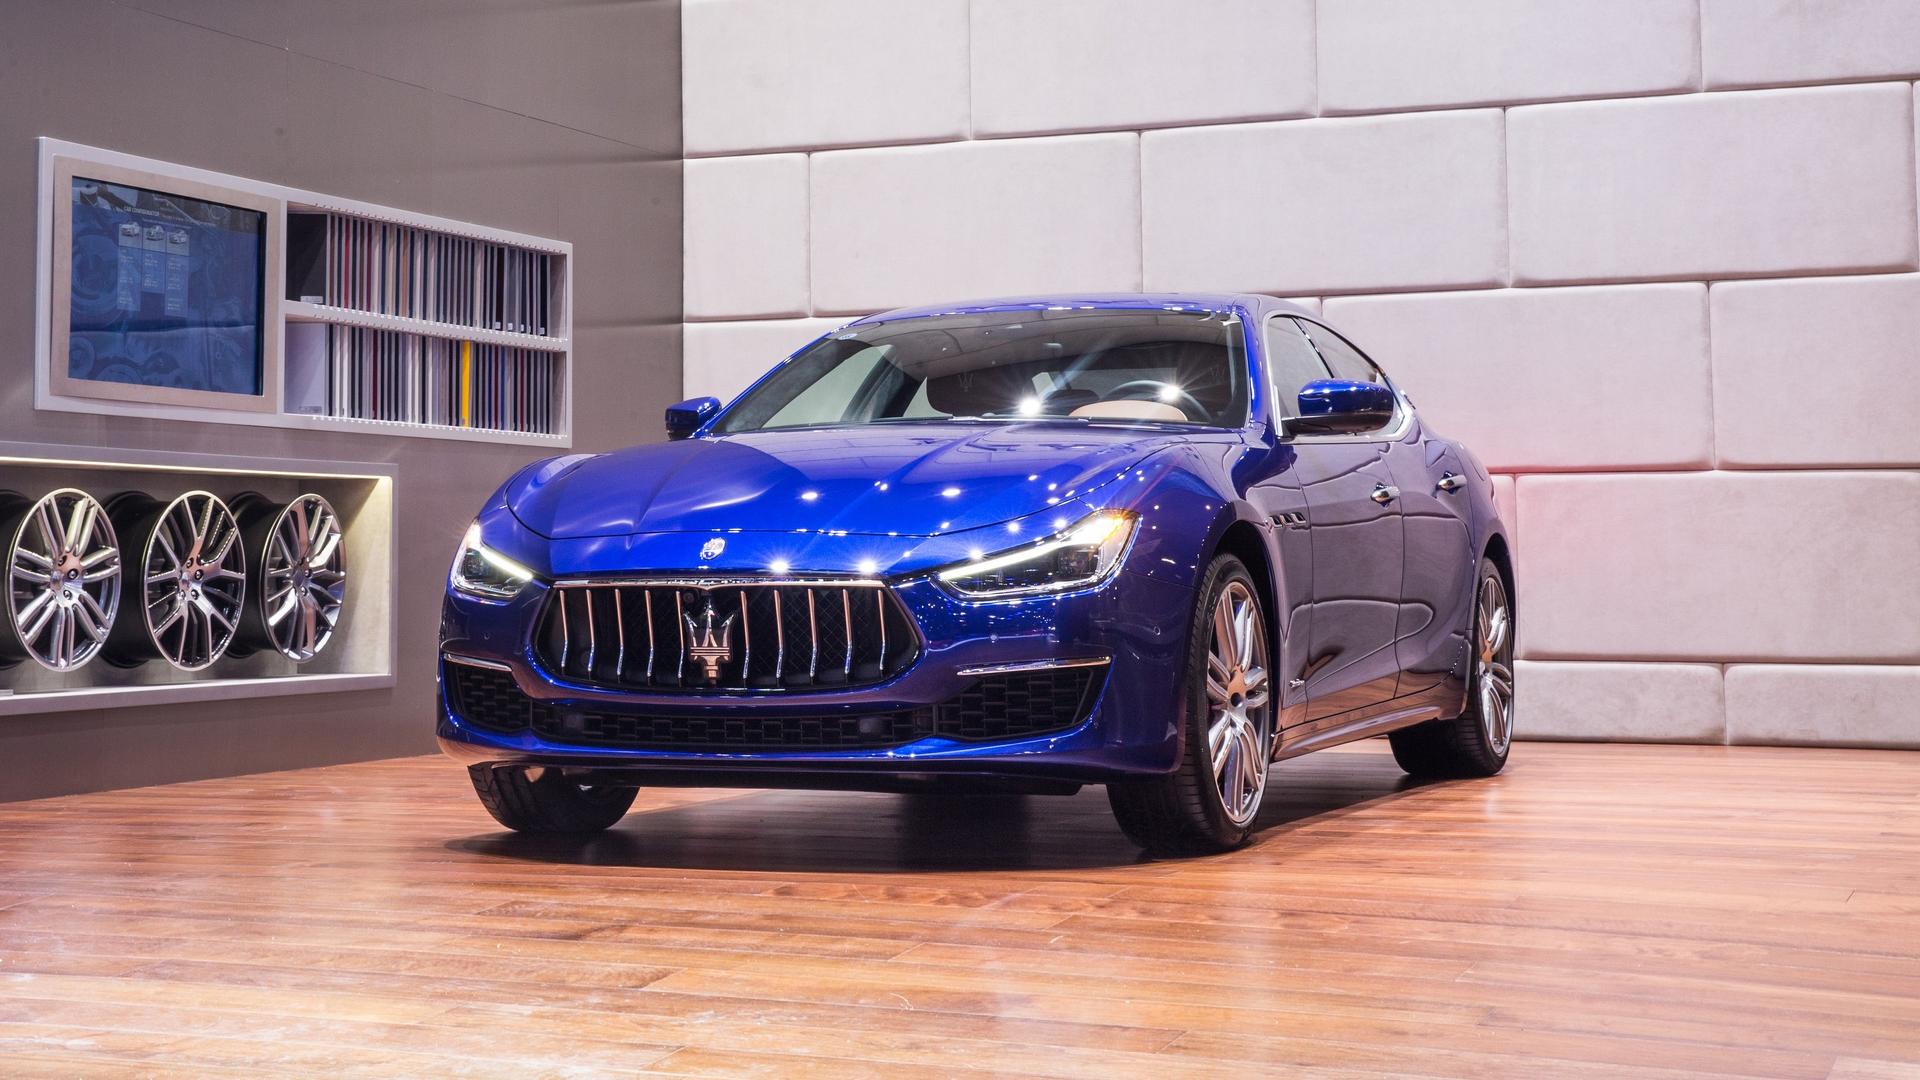 Maserati заявила, что сделала 100 тысяч седанов Ghibli за 6 лет